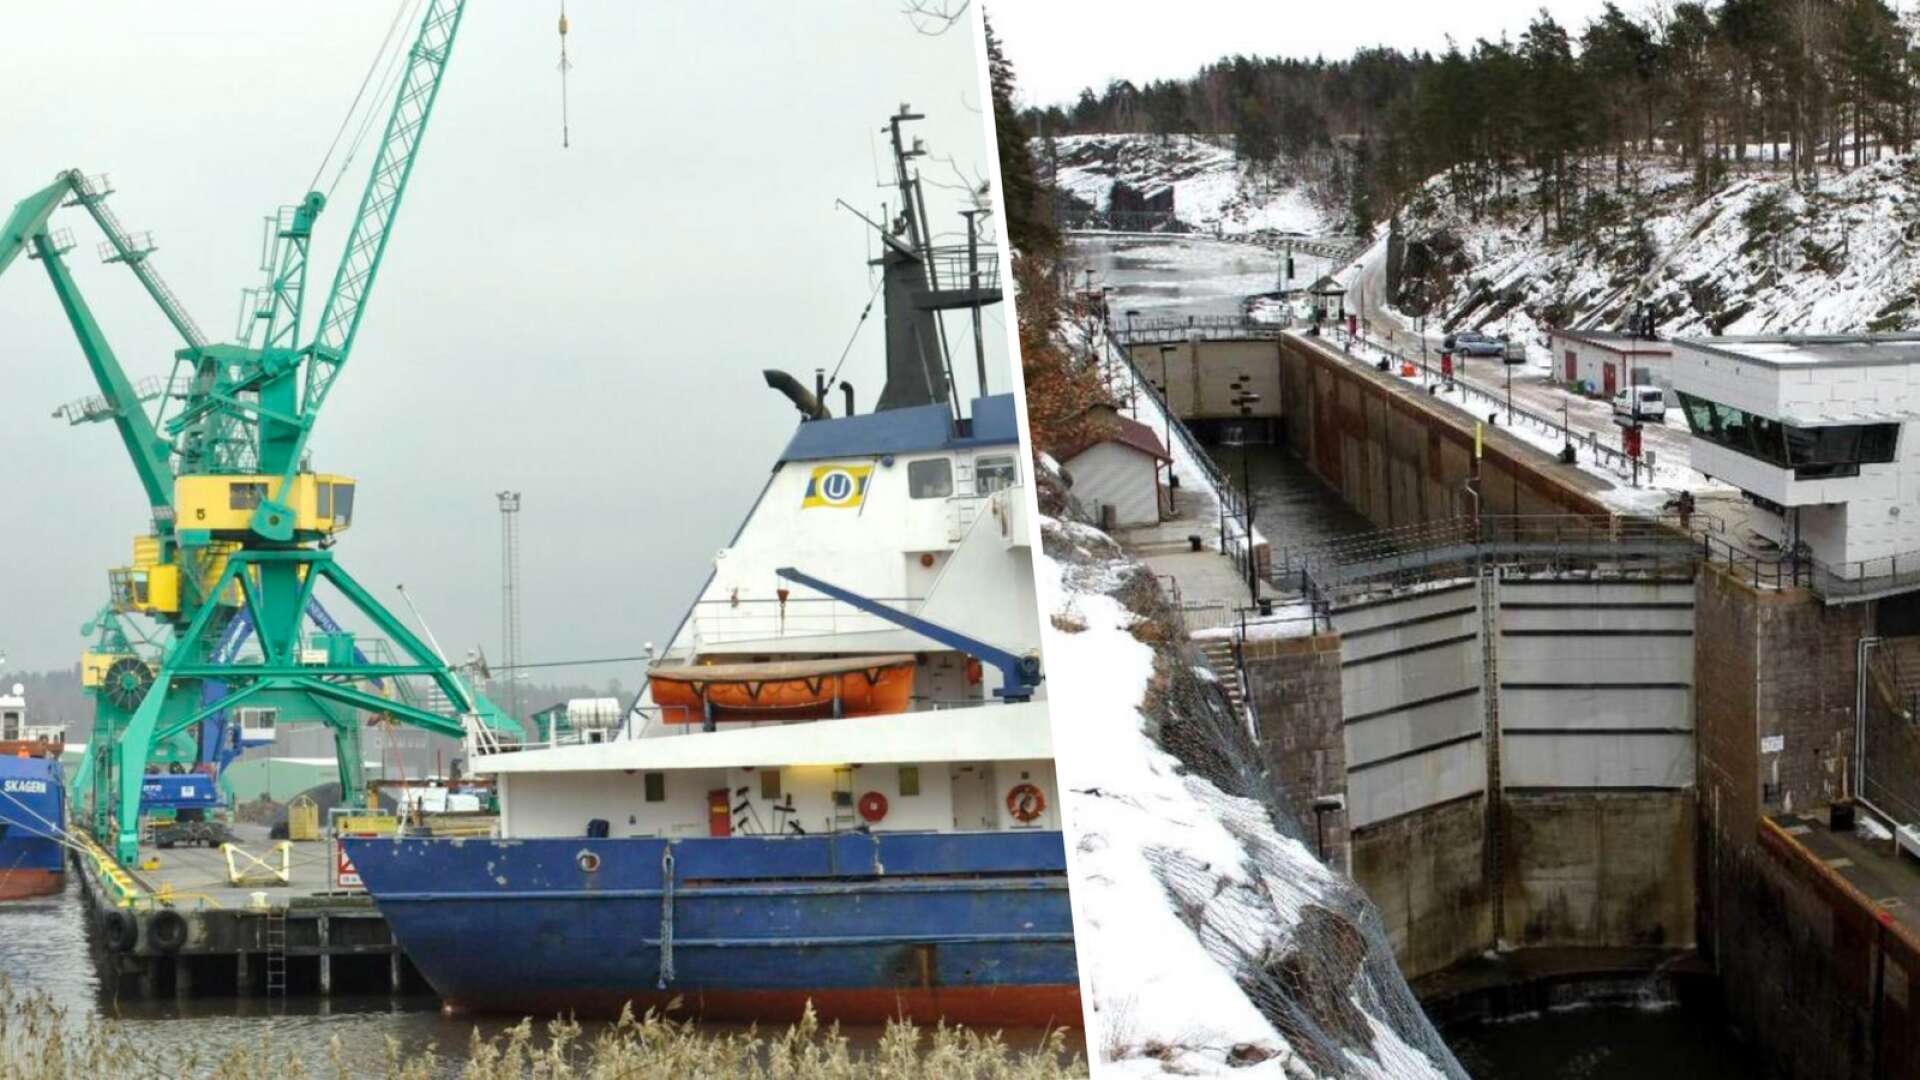 Bygget med nya slussar i Trollhättan skulle få stora konsekvenser för näringslivet i Värmland